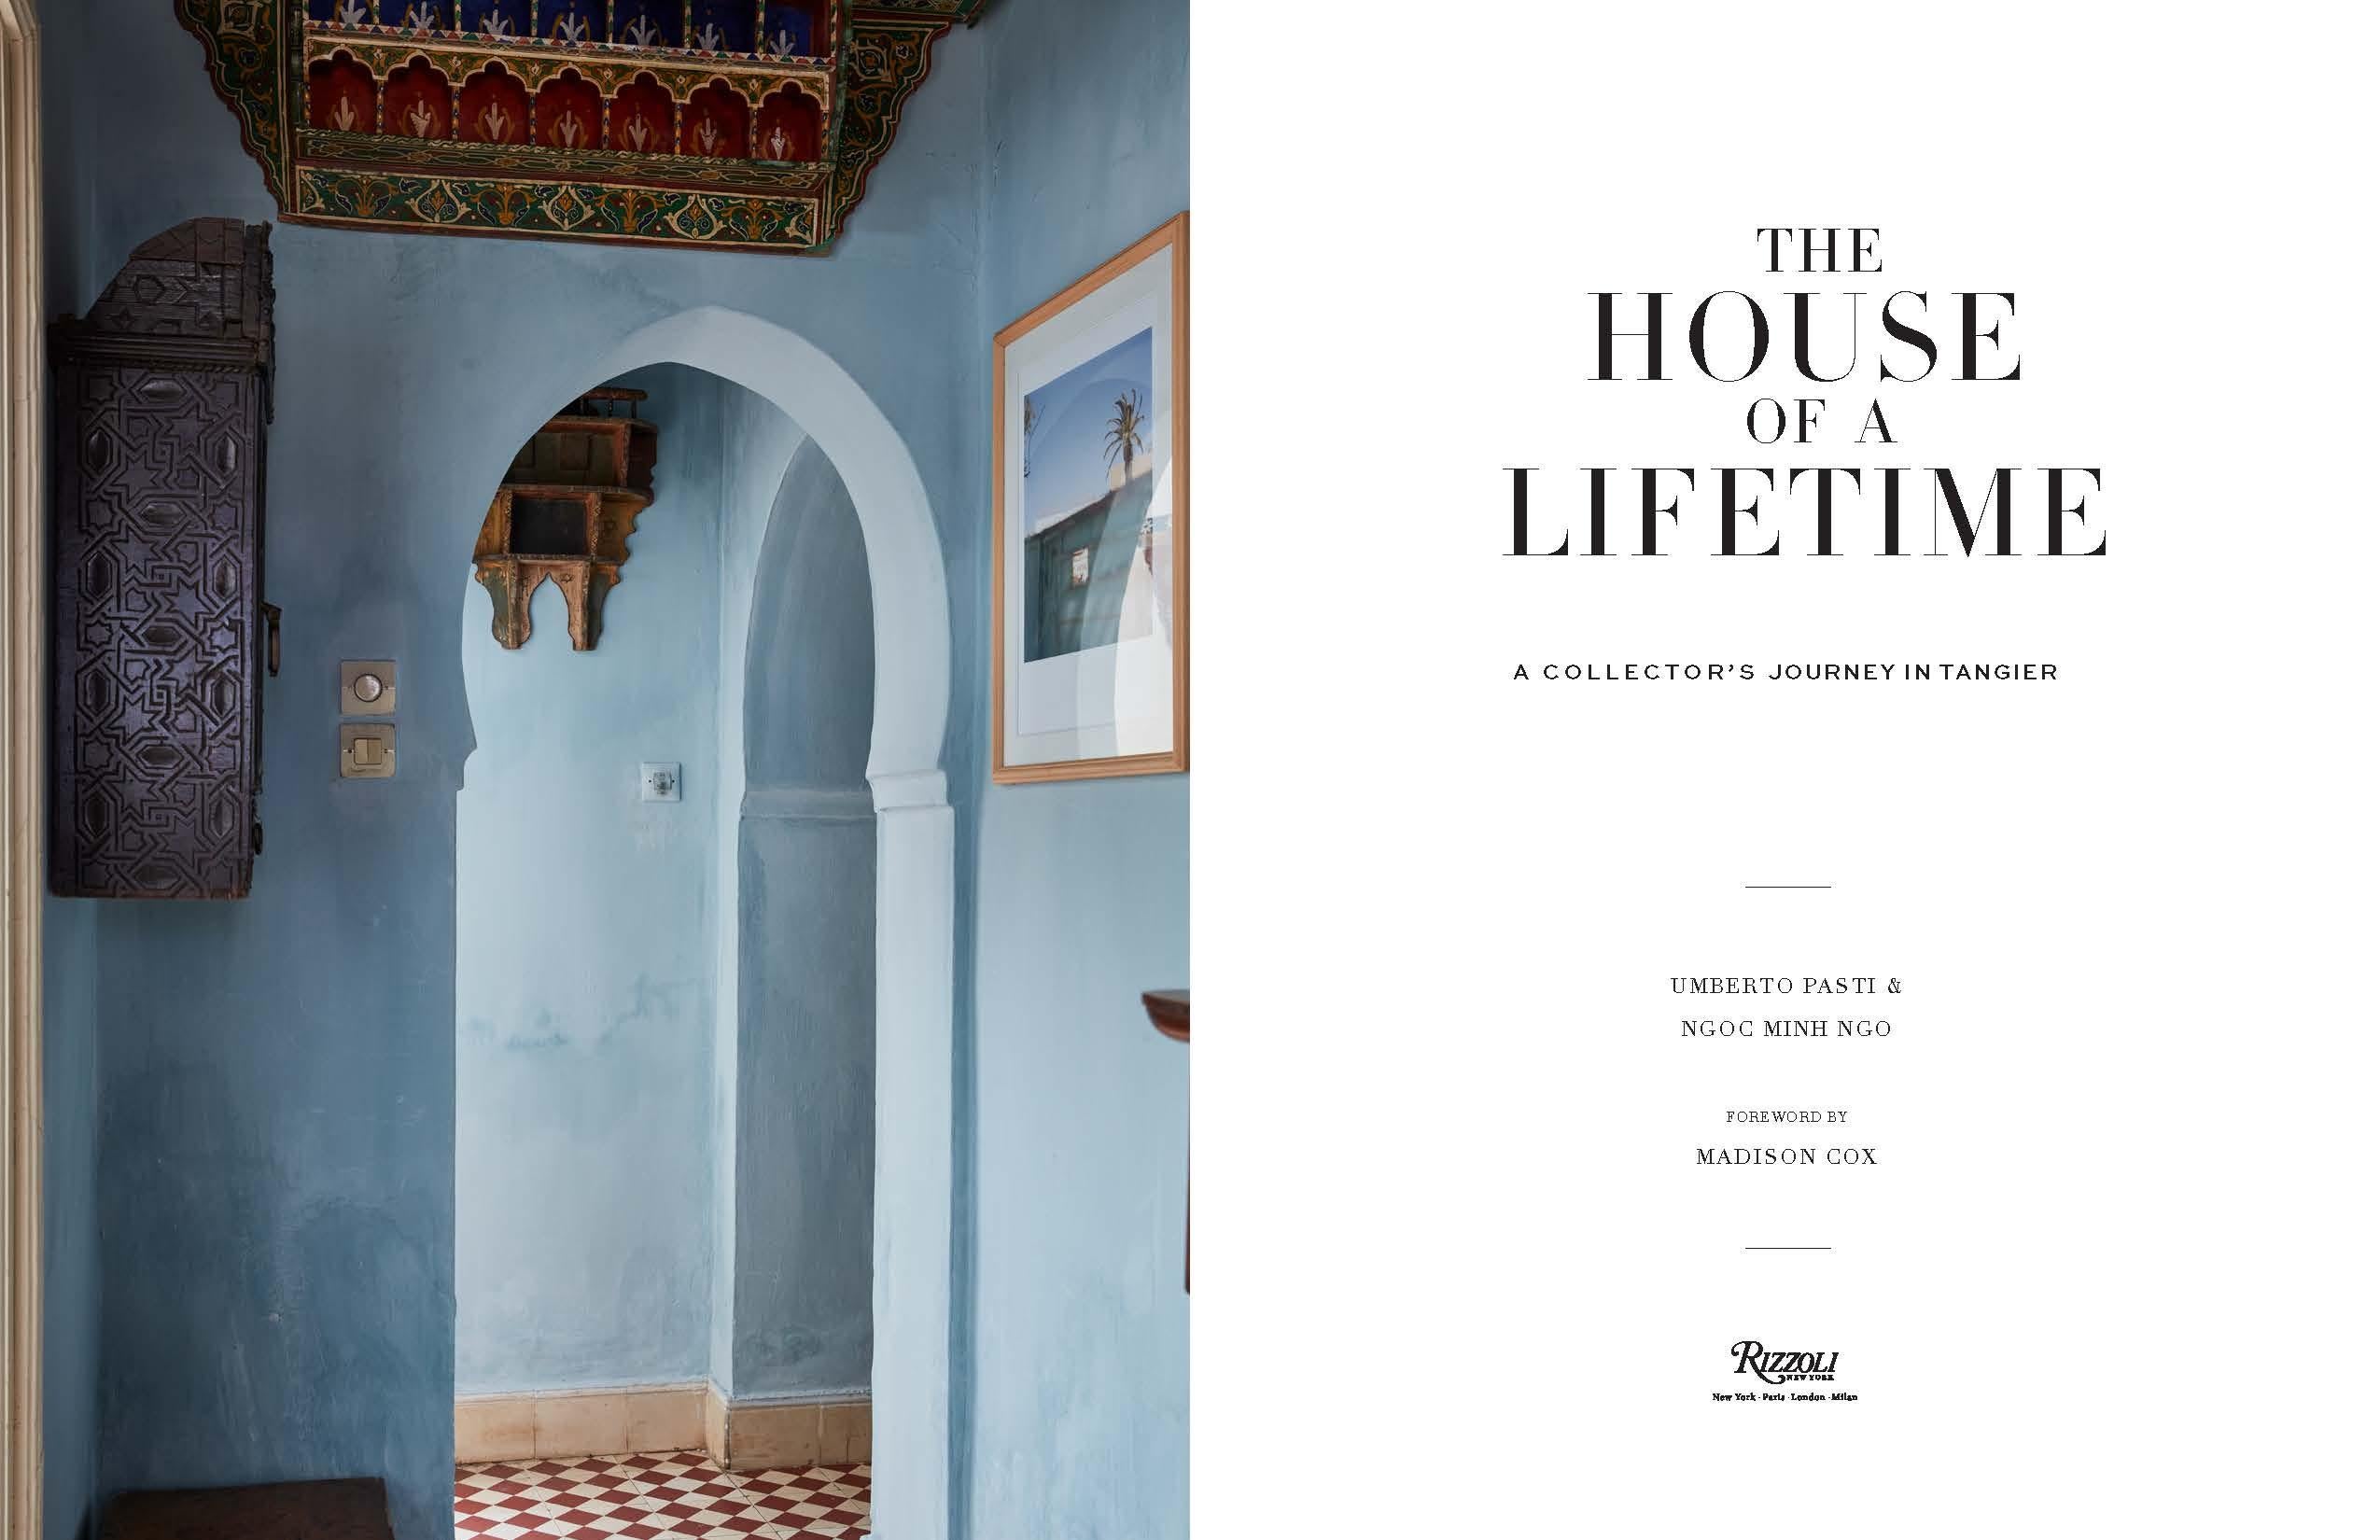 Autor Umberto Pasti und Ngoc Minh Ngo, Vorwort von Madison COX

Ein fotografischer Rundgang durch eine außergewöhnliche Villa in Tanger mit besonderem Augenmerk auf die museumswürdigen Sammlungen marokkanischer Kunstwerke und